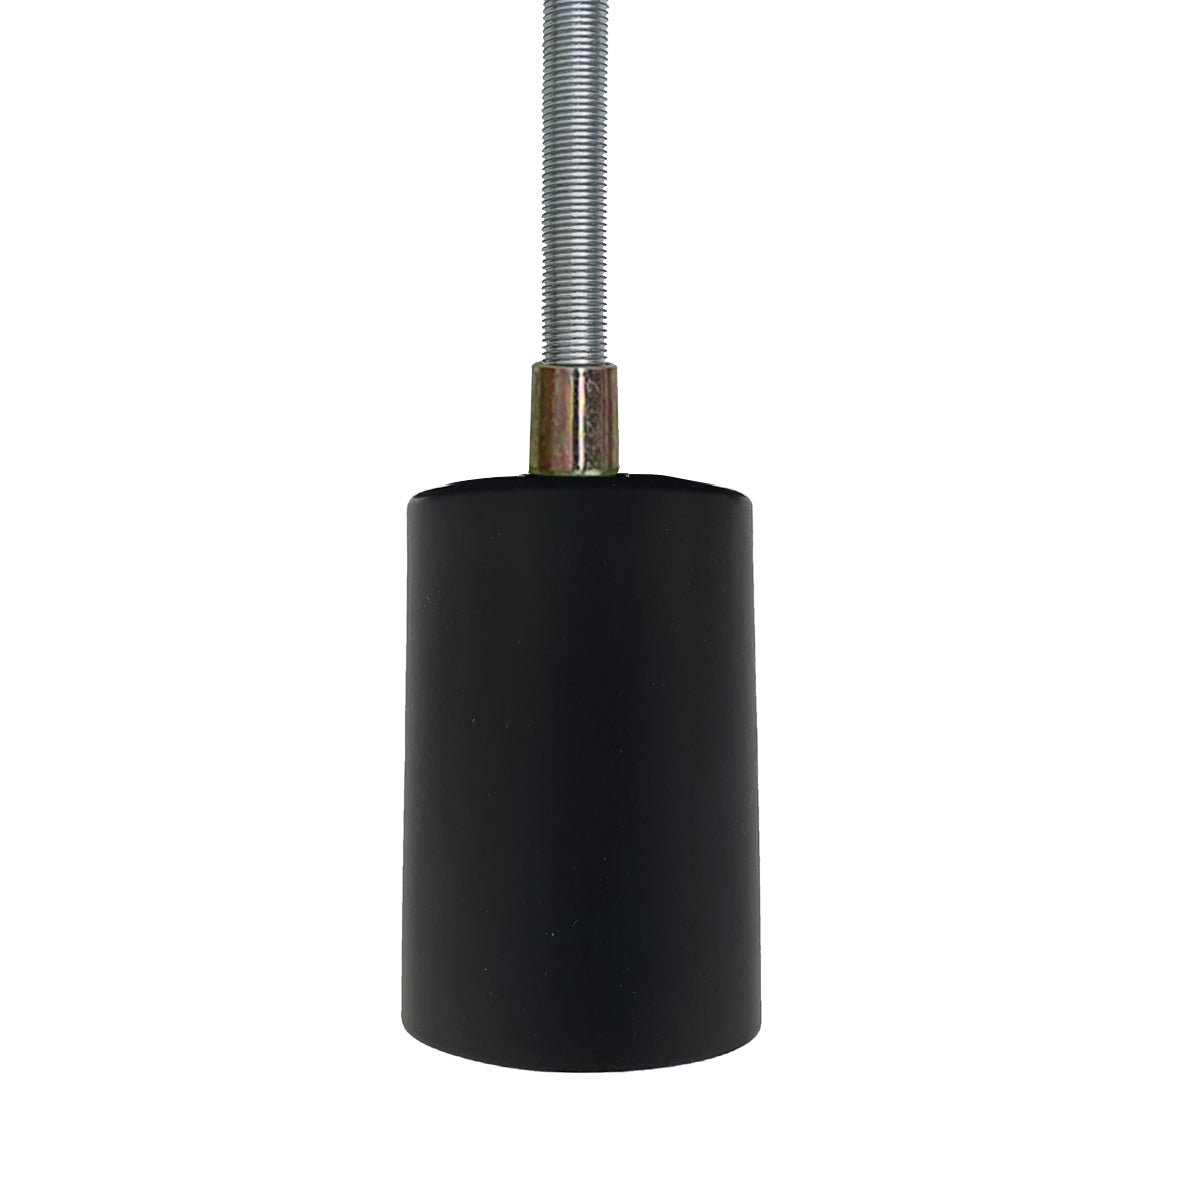 Black lamp holder